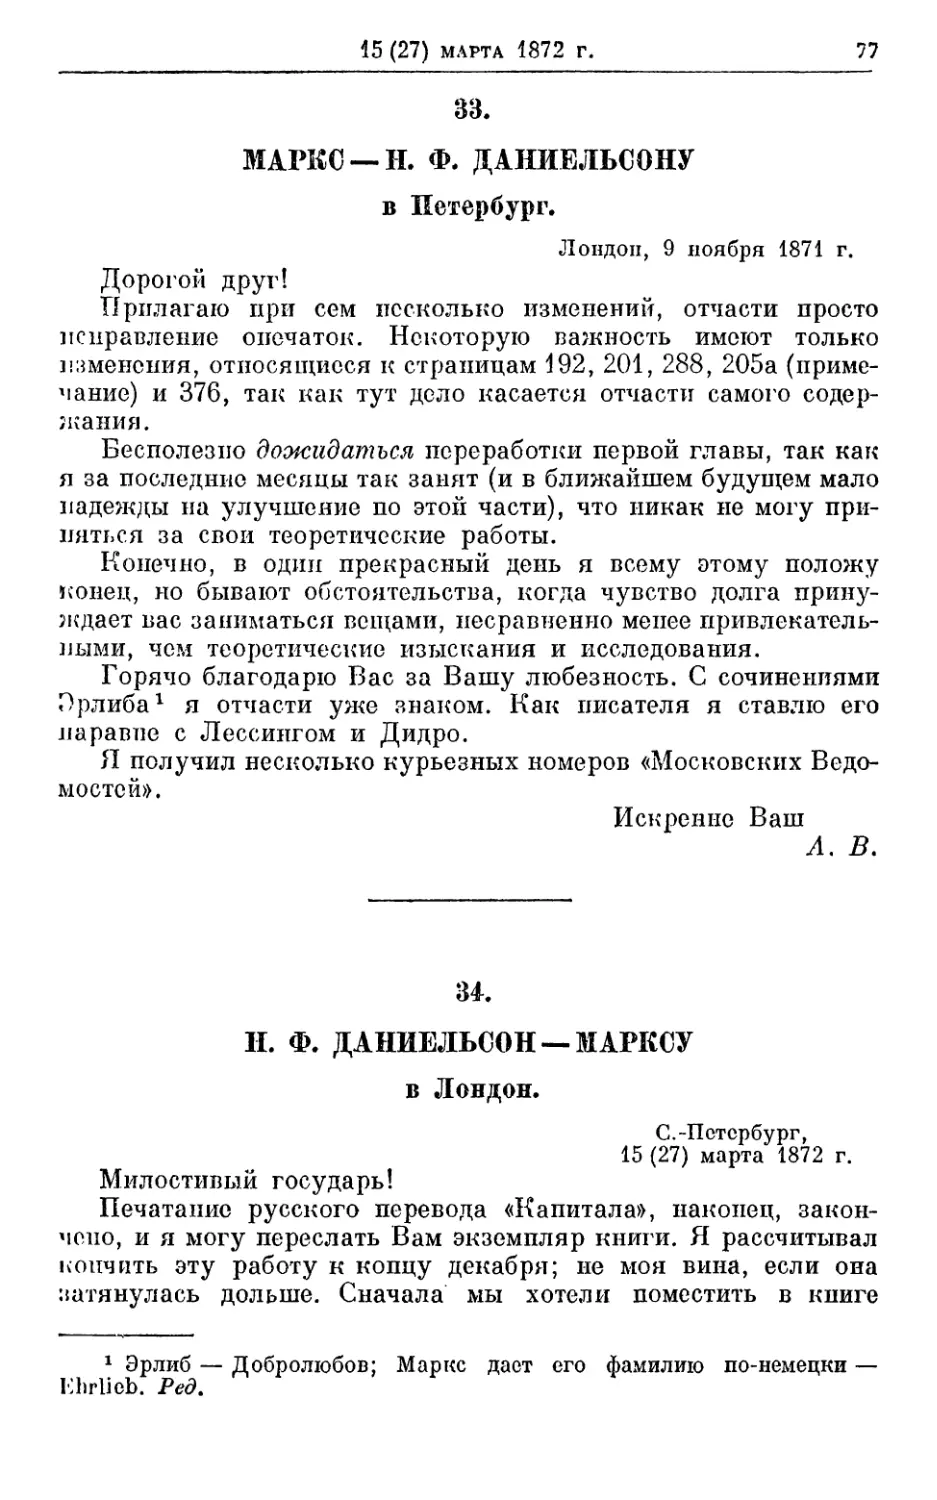 33. Маркс — Н. Ф. Даииельсопу, 9 ноября 1871г